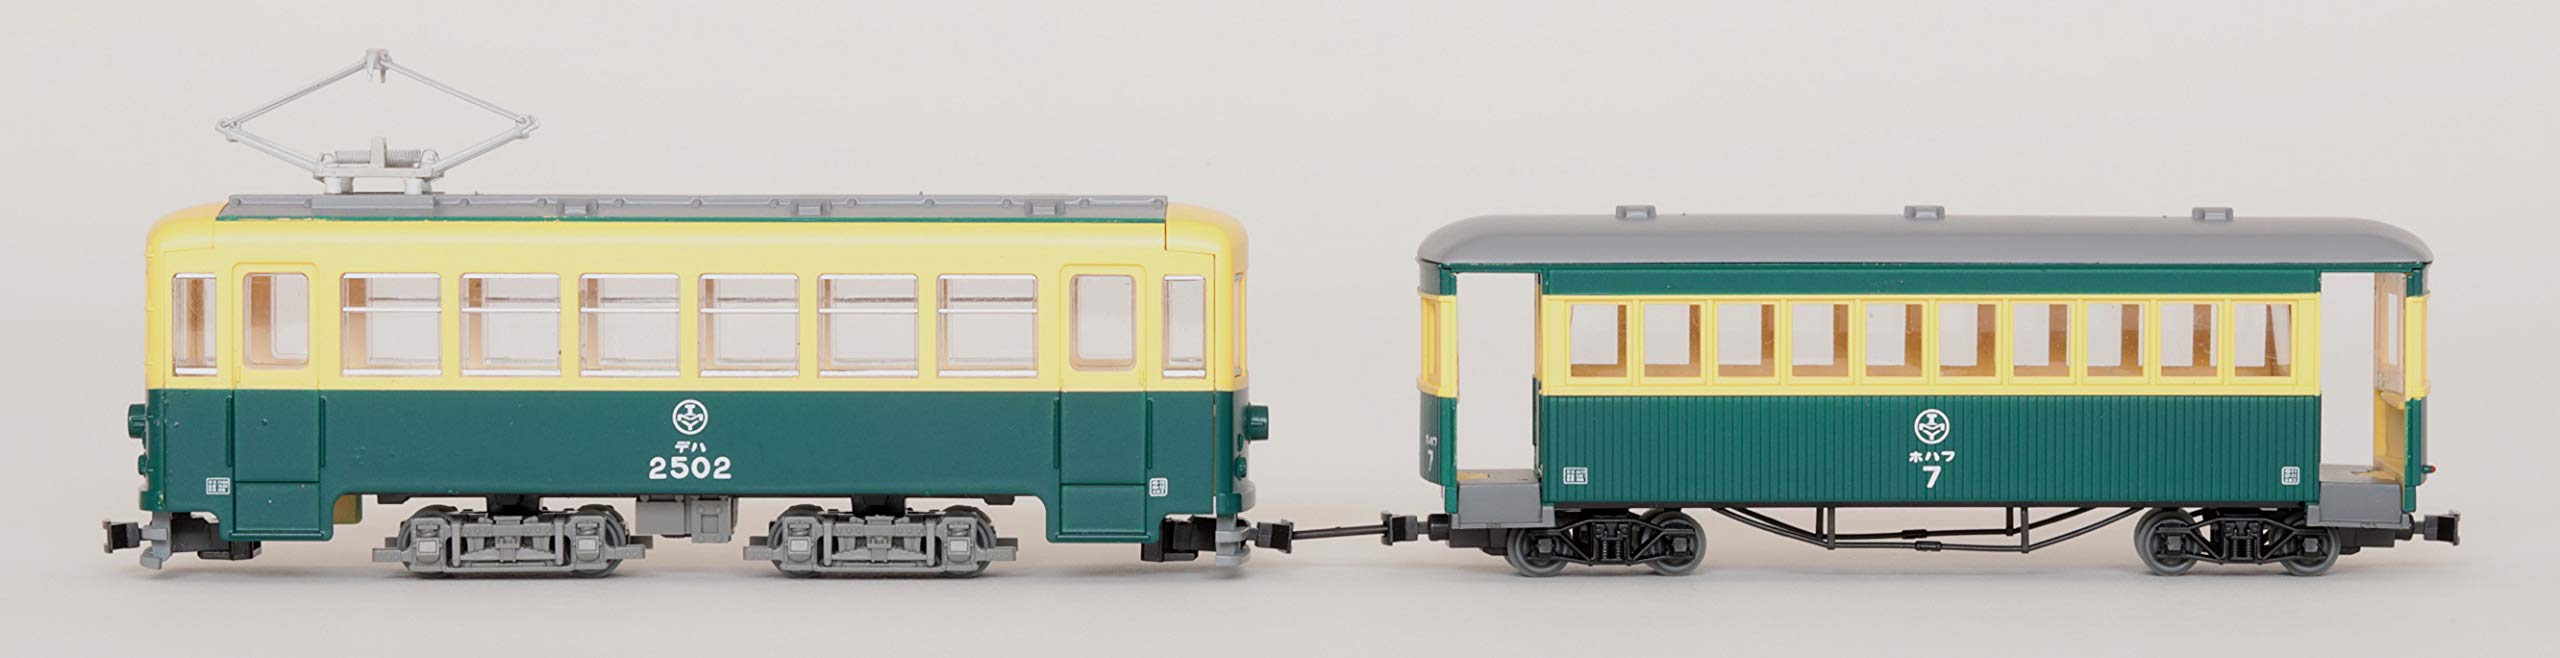 Tomytec Gold Wagen- und Passagierset Schmalspurbahn Kollektion 80 Nekoya - Diorama in limitierter Auflage